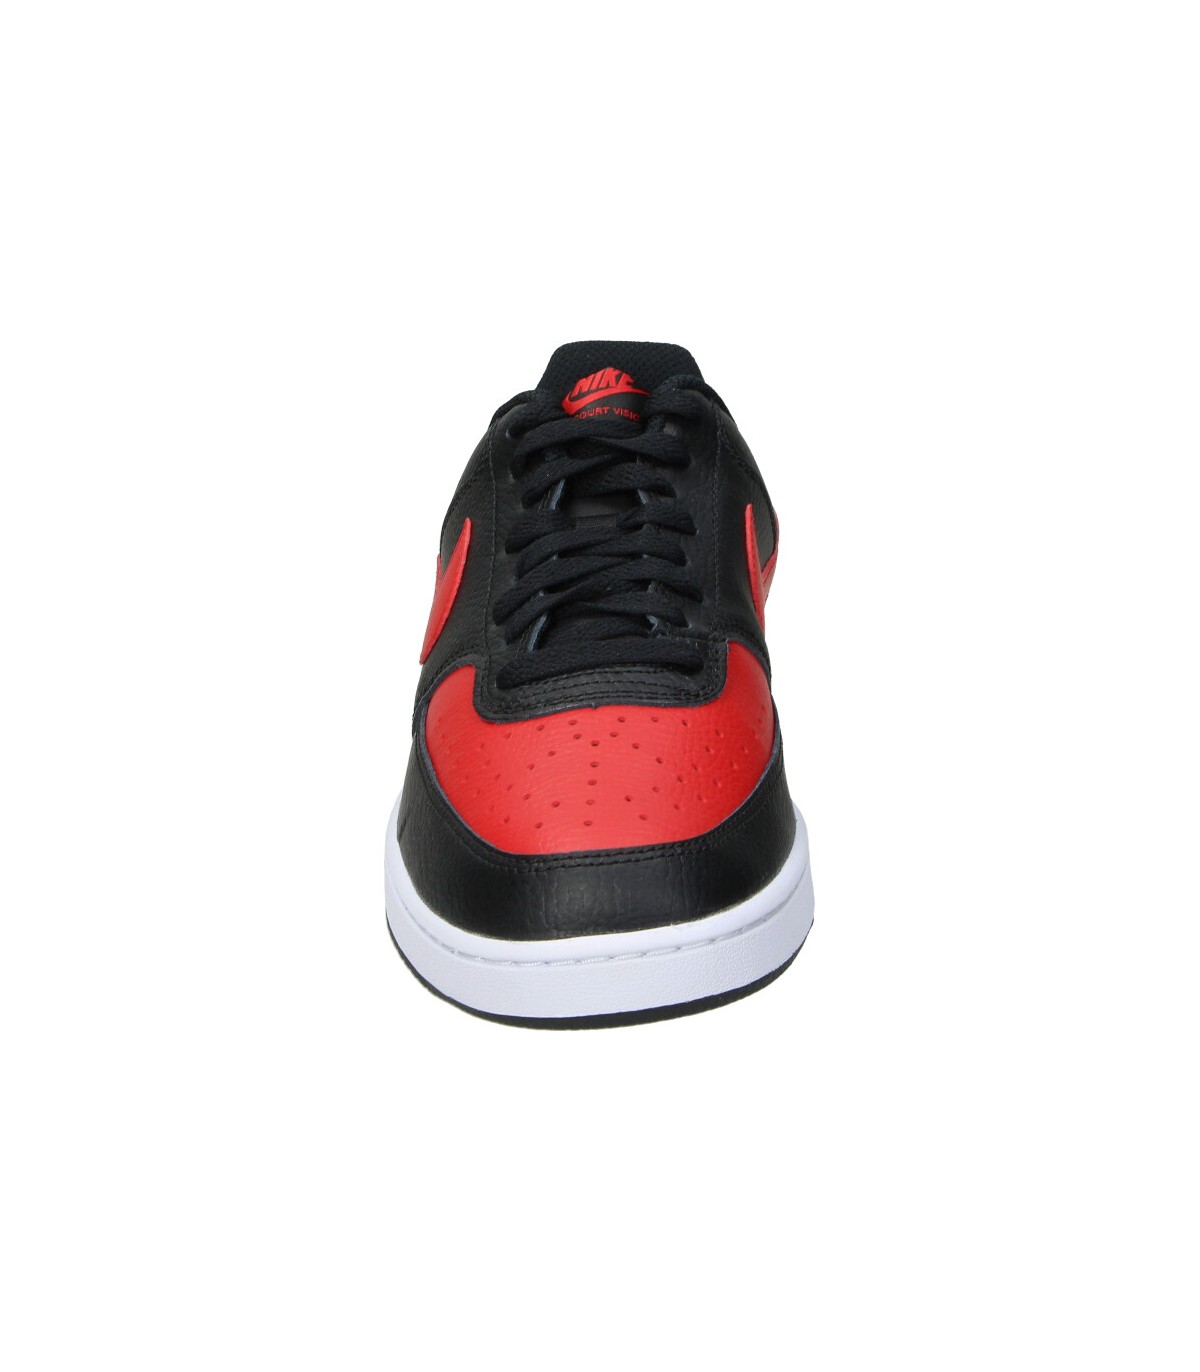 Zapatillas negras hombre Nike Court Vision Low online en MEGACALZADO